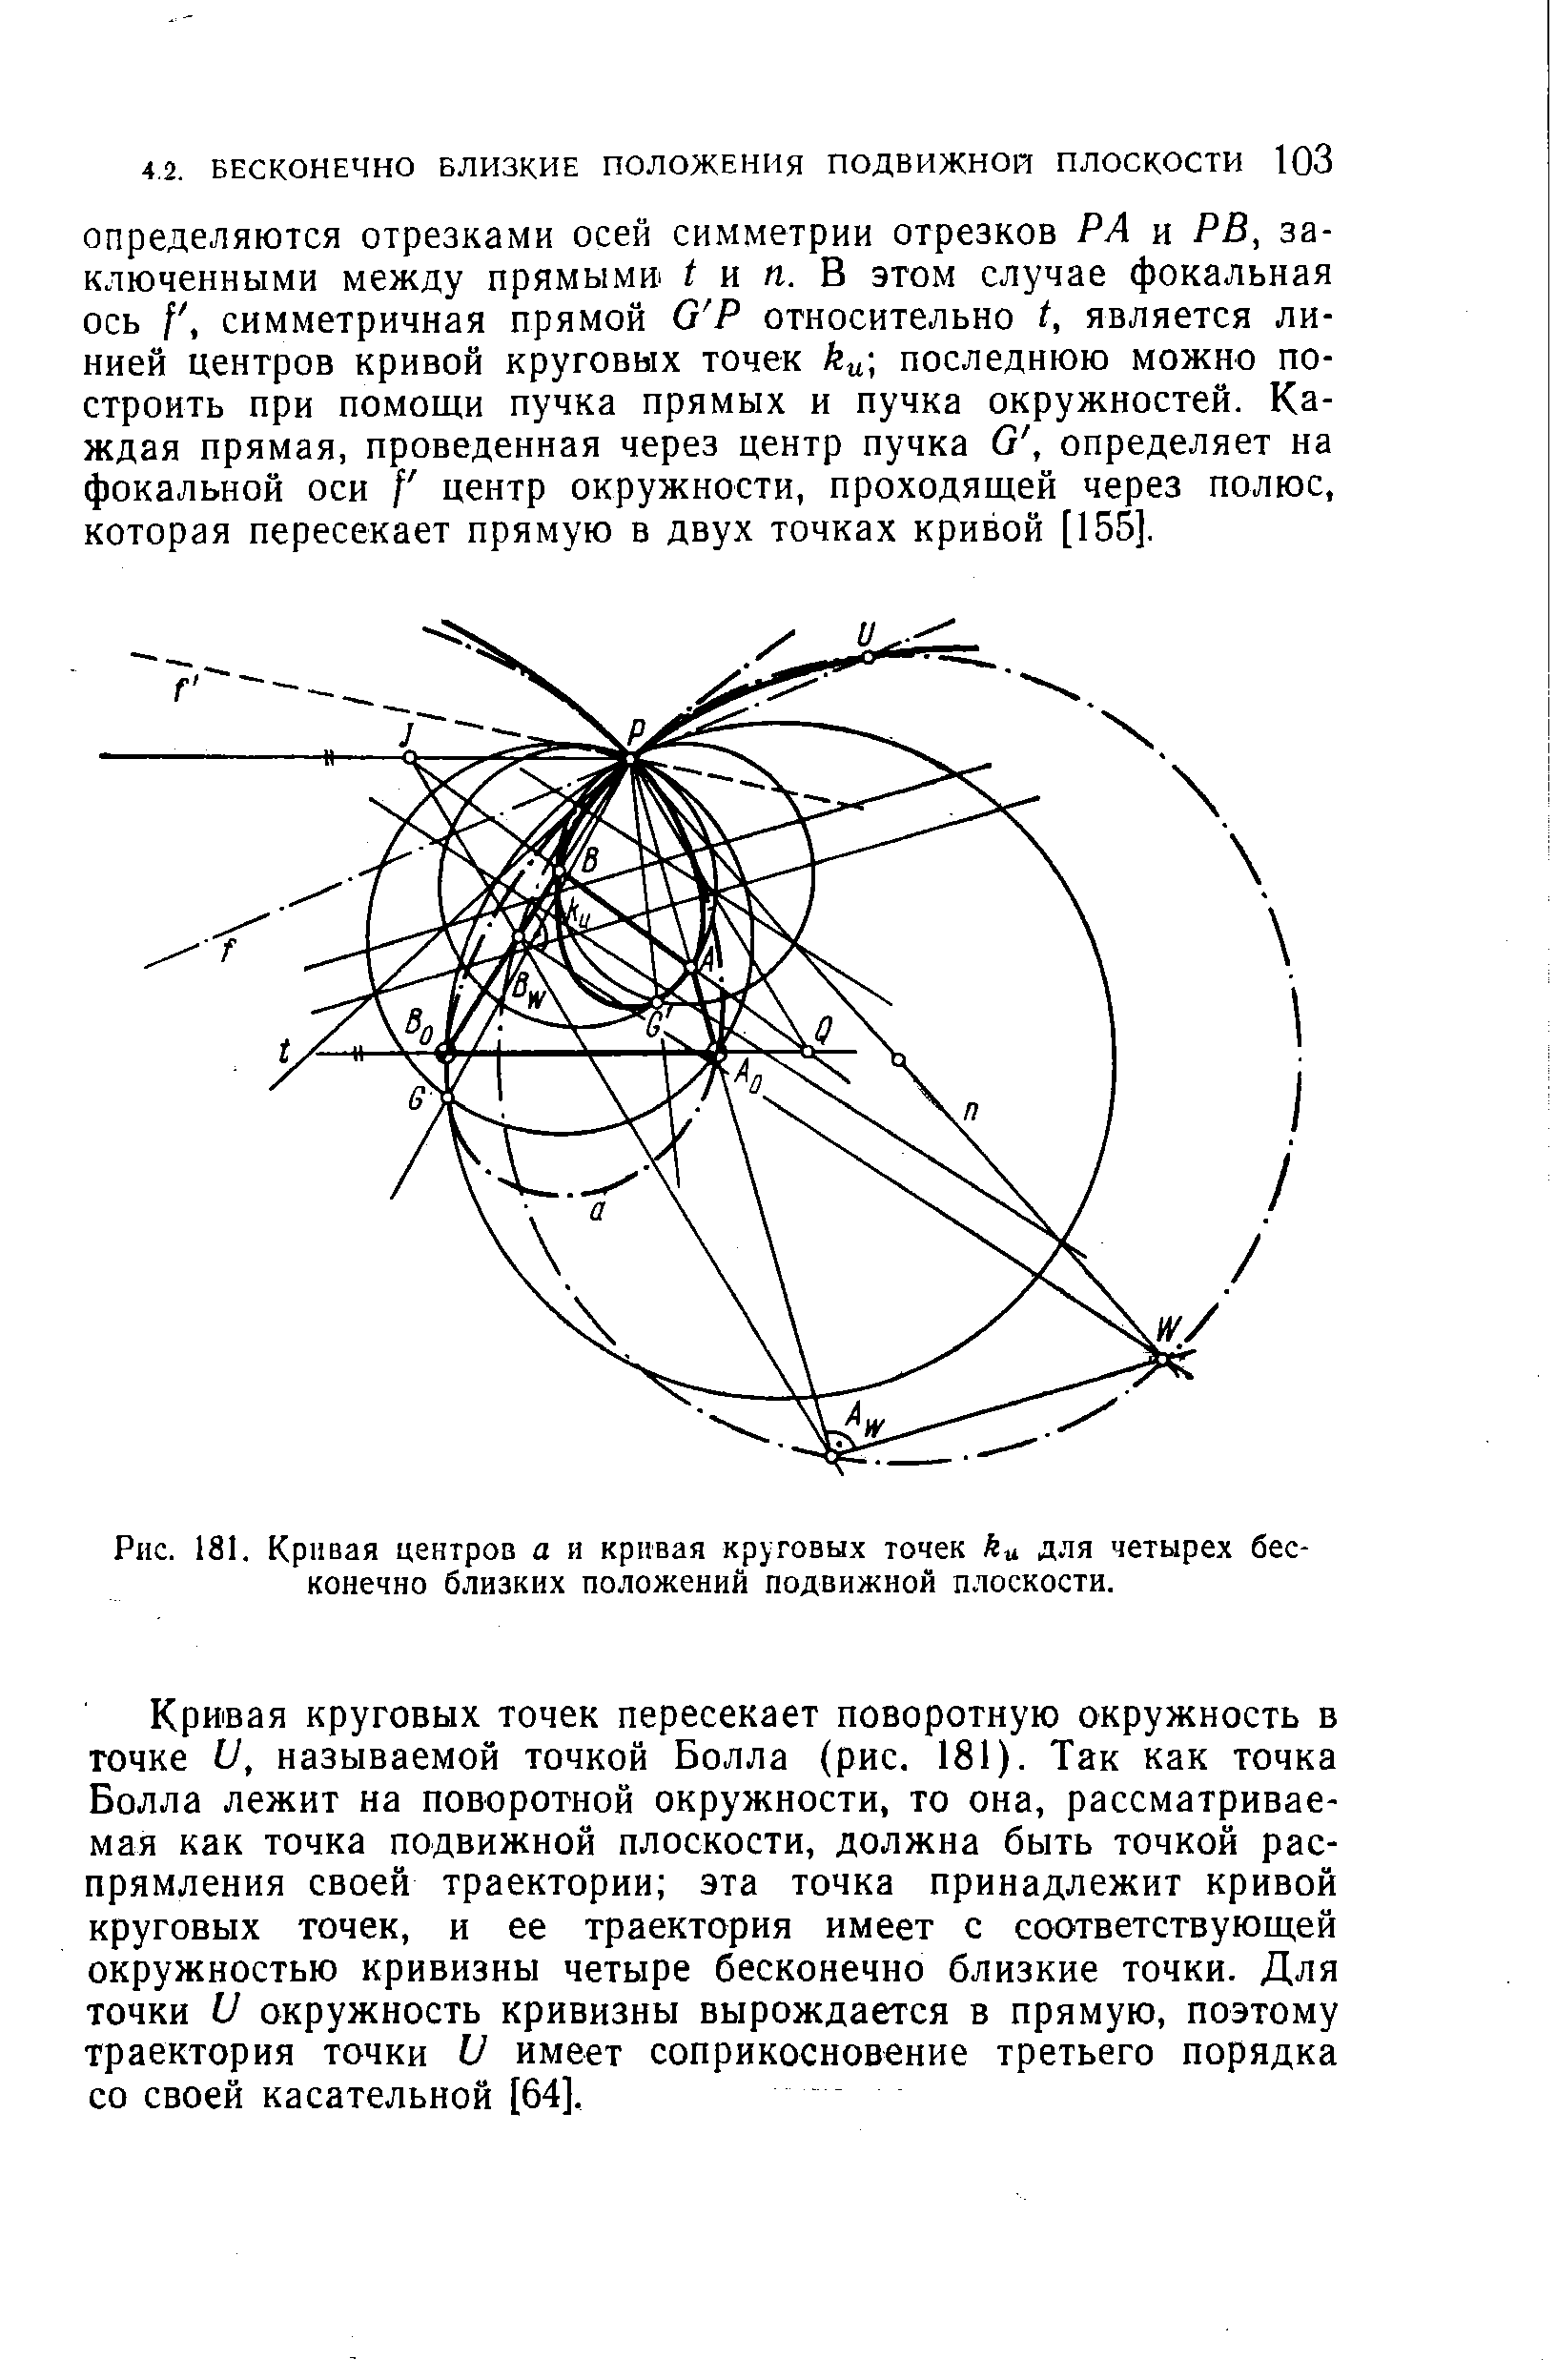 Рис. 181. Кривая центров а и кривая круговых точек ku для четырех бесконечно близких положений подвижной плоскости.
